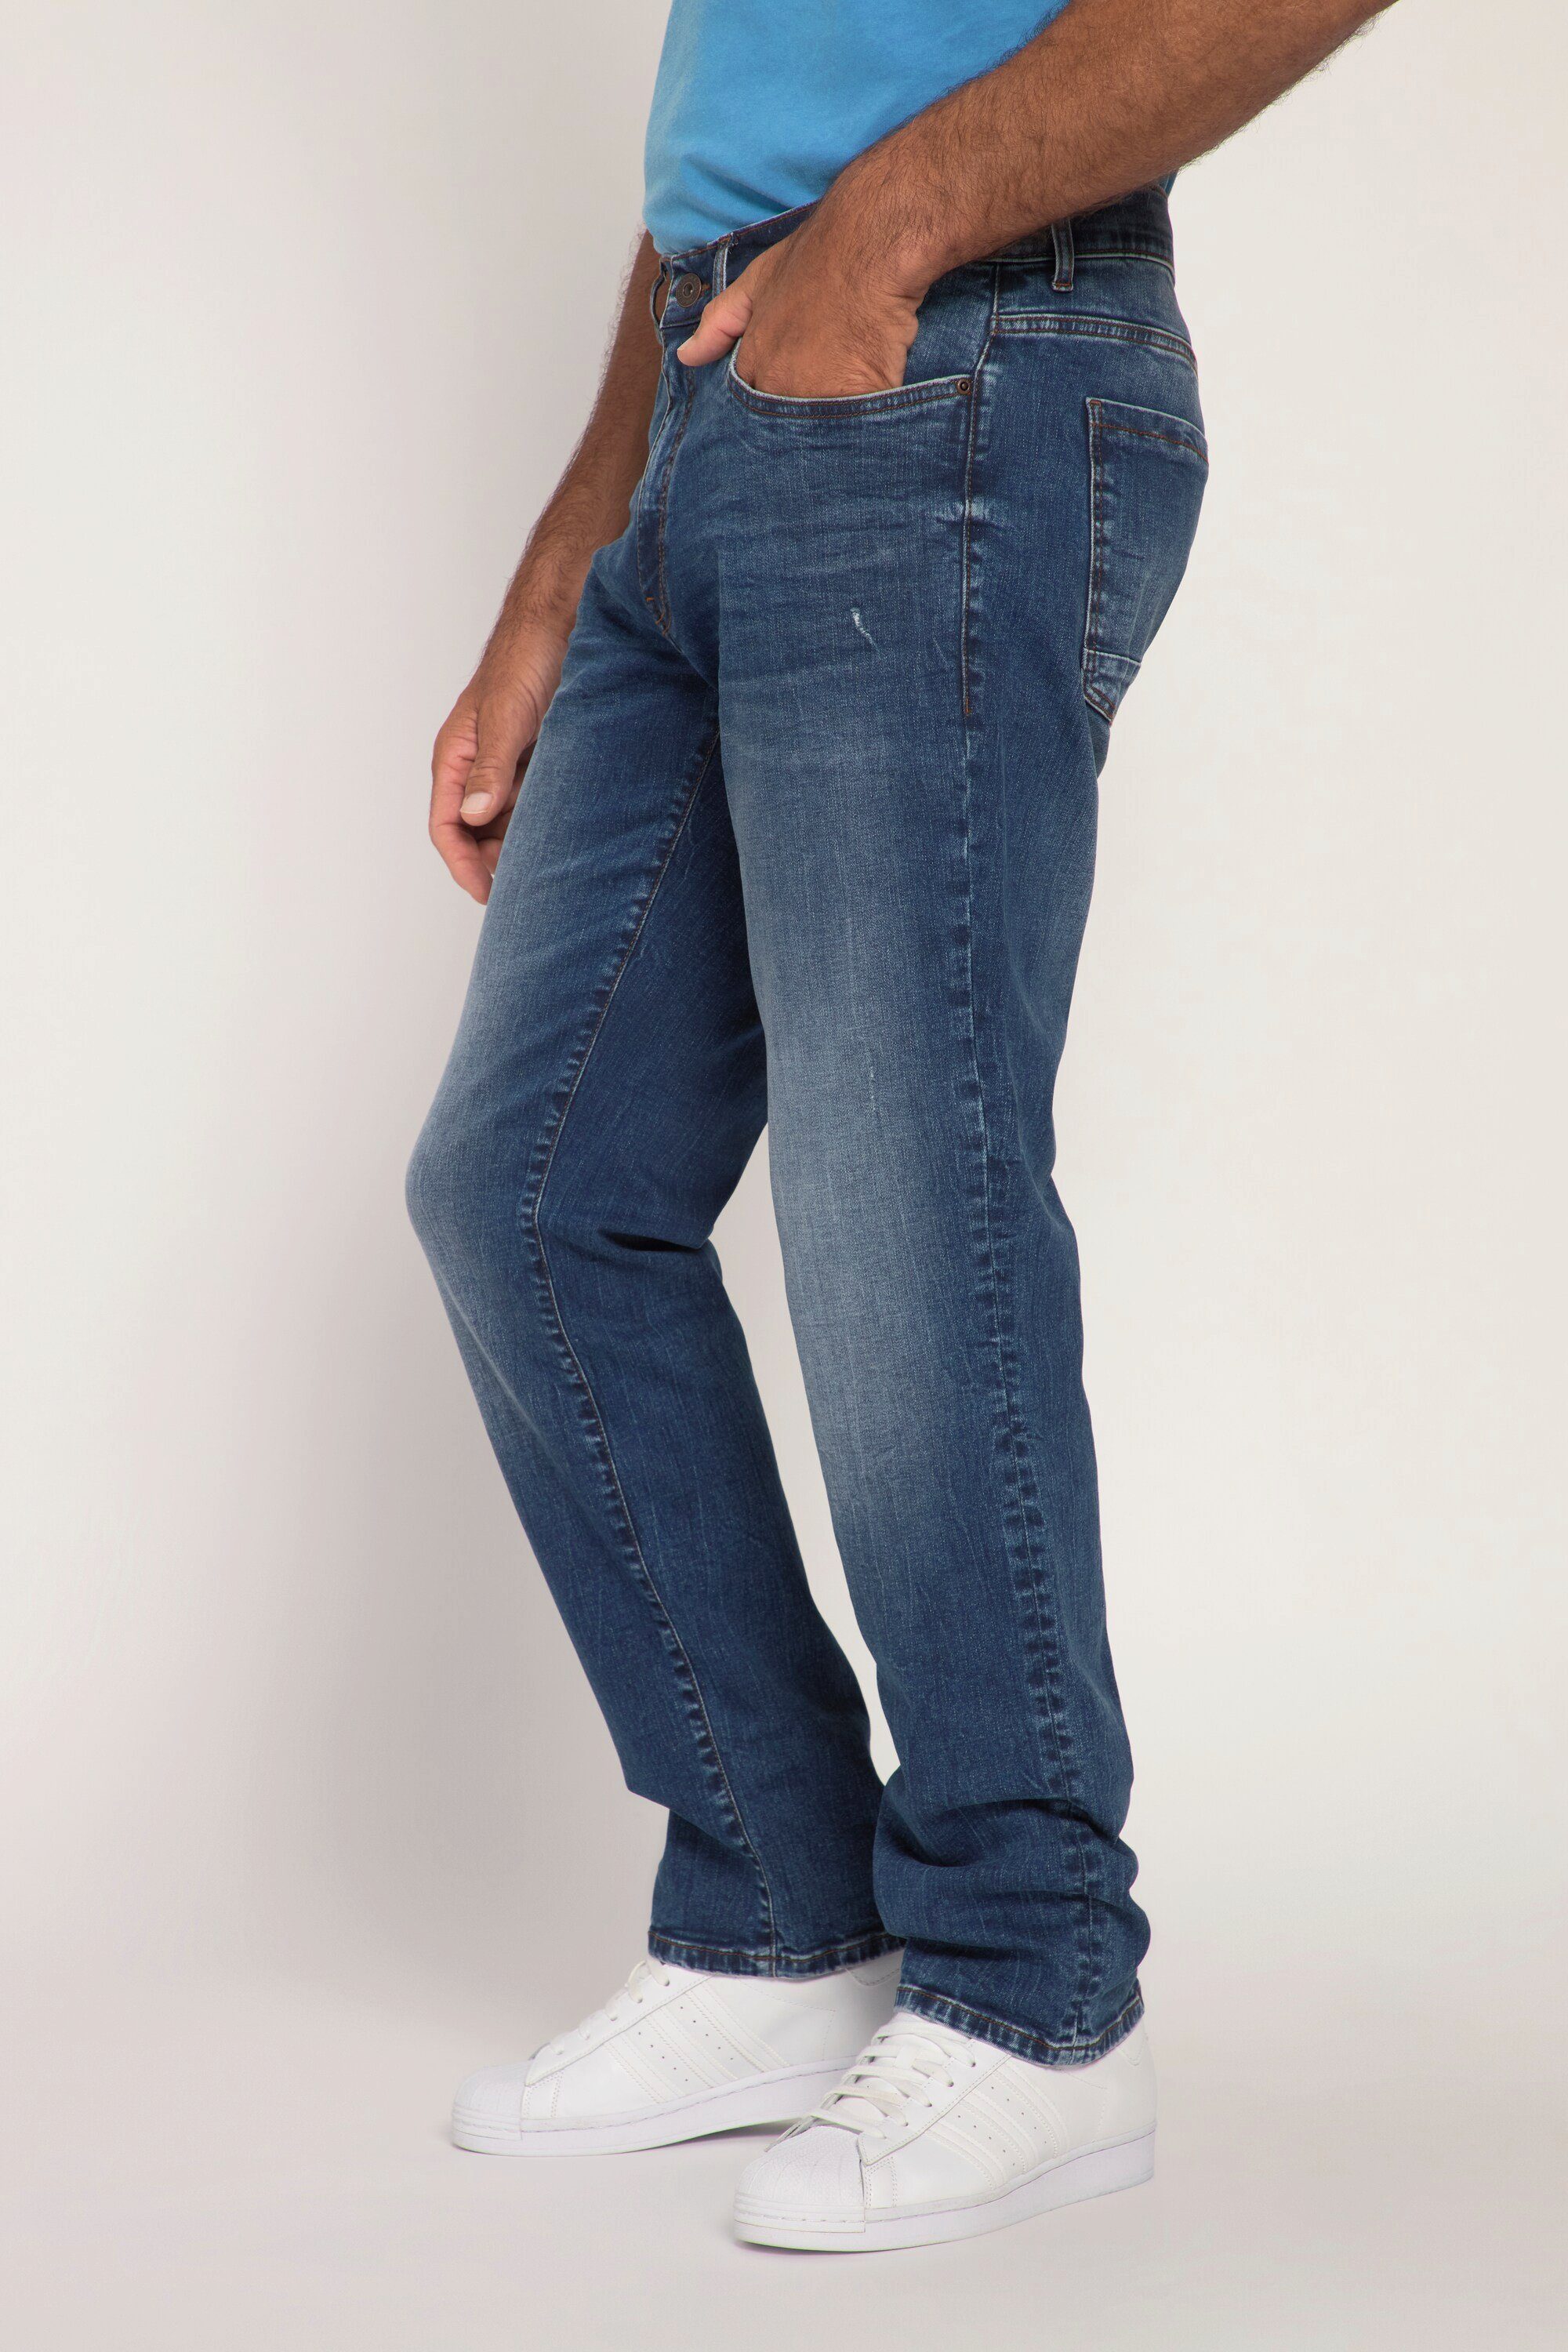 5-Pocket-Jeans Vintage Fit denim Jeans JP1880 Look blue Regular FLEXNAMIC® Denim